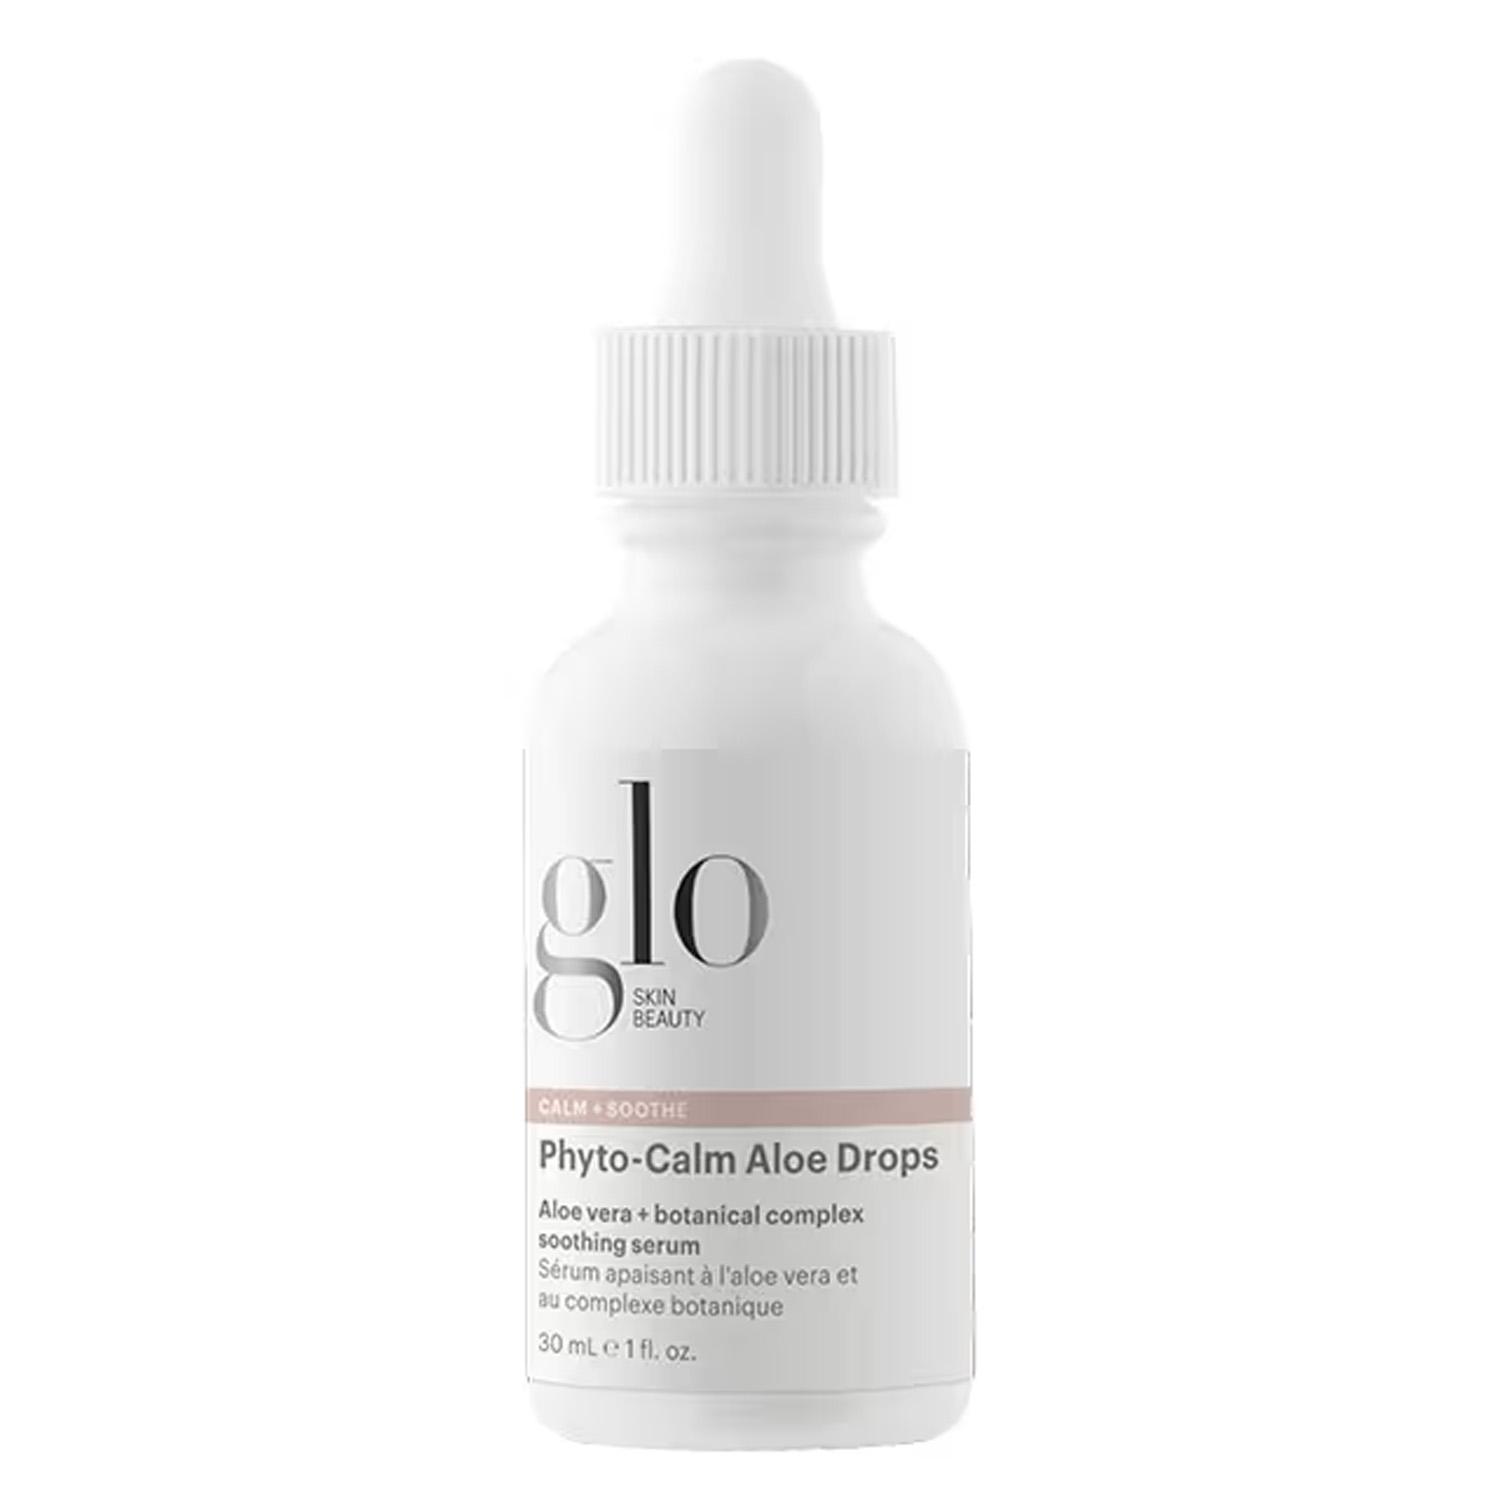 Glo Skin Beauty Care - Phyto-Calm Aloe Drops